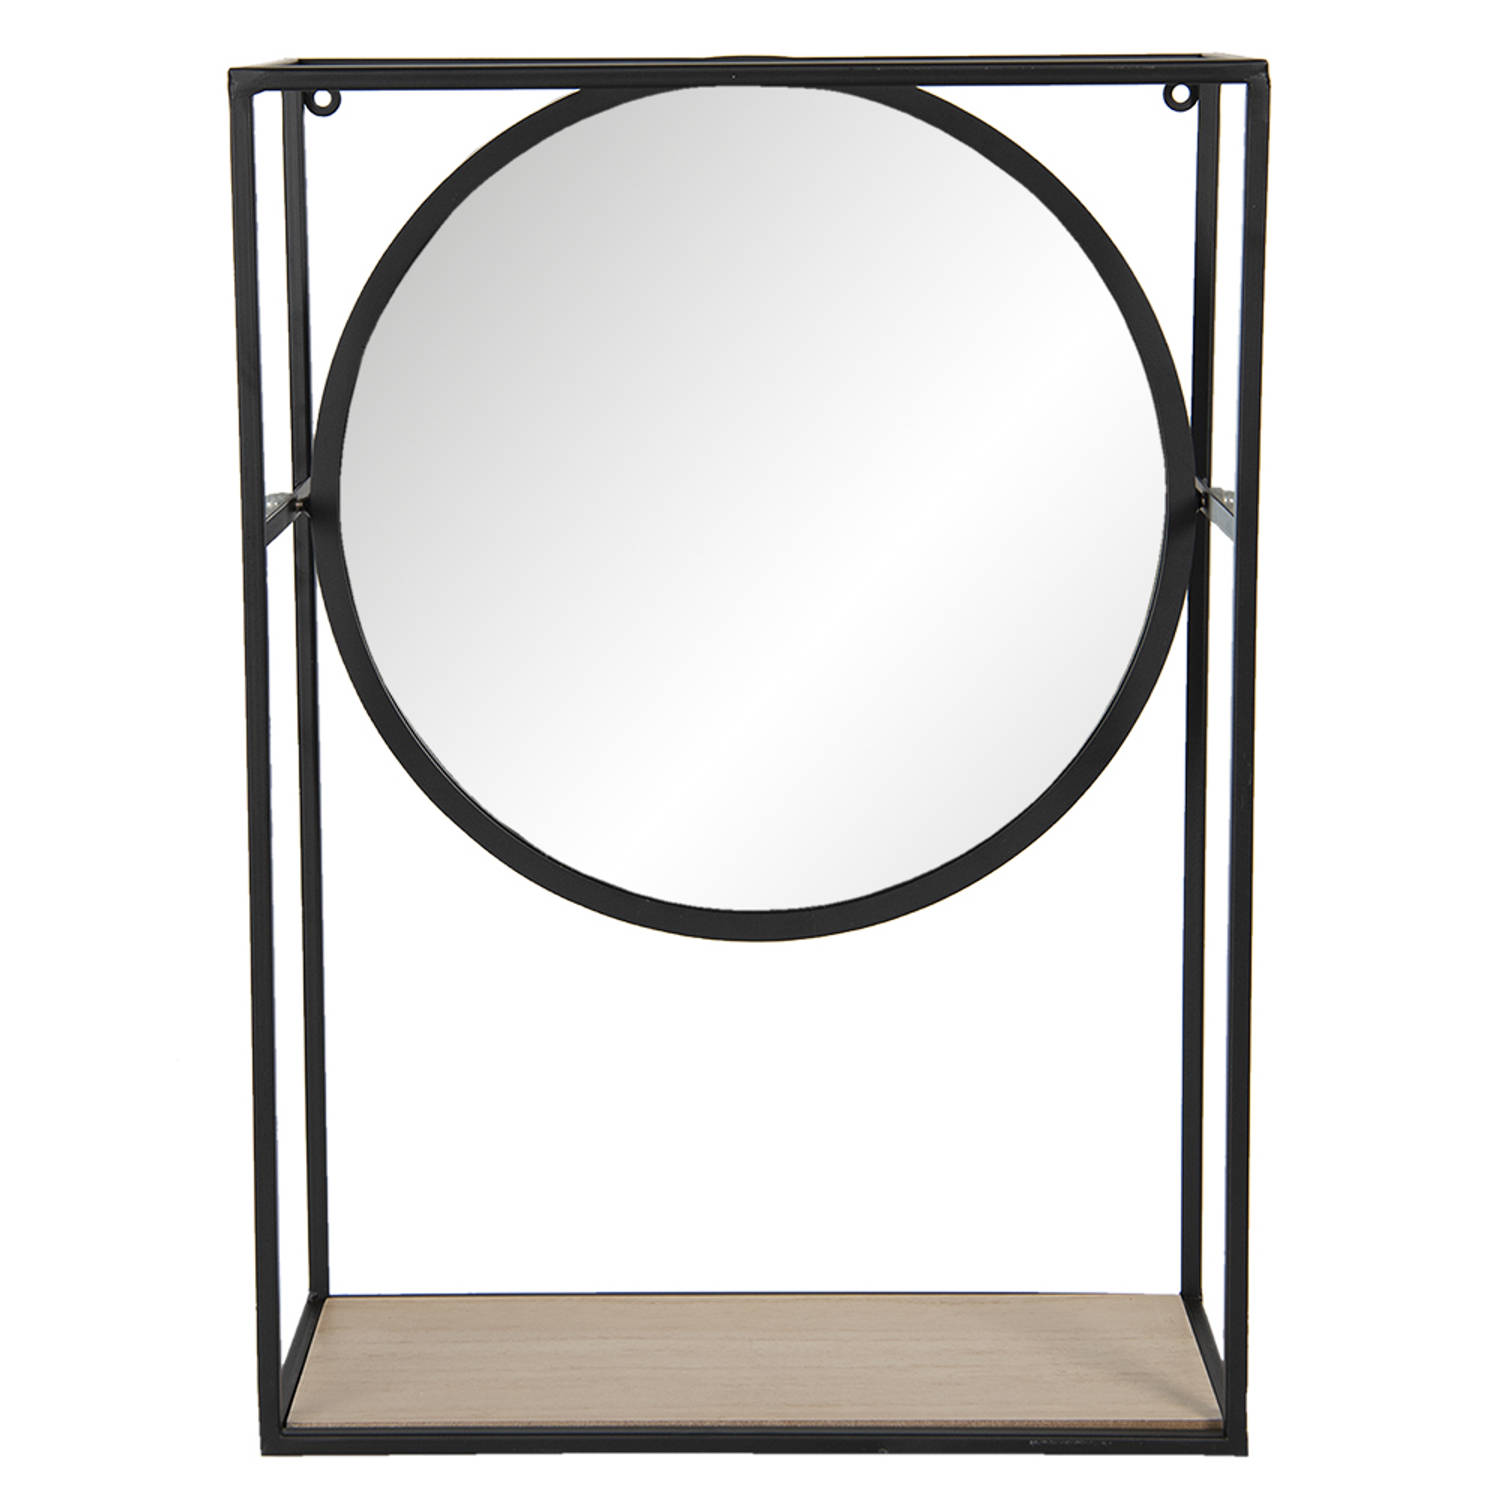 HAES DECO - Ronde Spiegel - Kleur Zwart - Formaat 36x15x50 cm - Materiaal Metaal / Glas / Hout - Wandspiegel, Spiegel rond